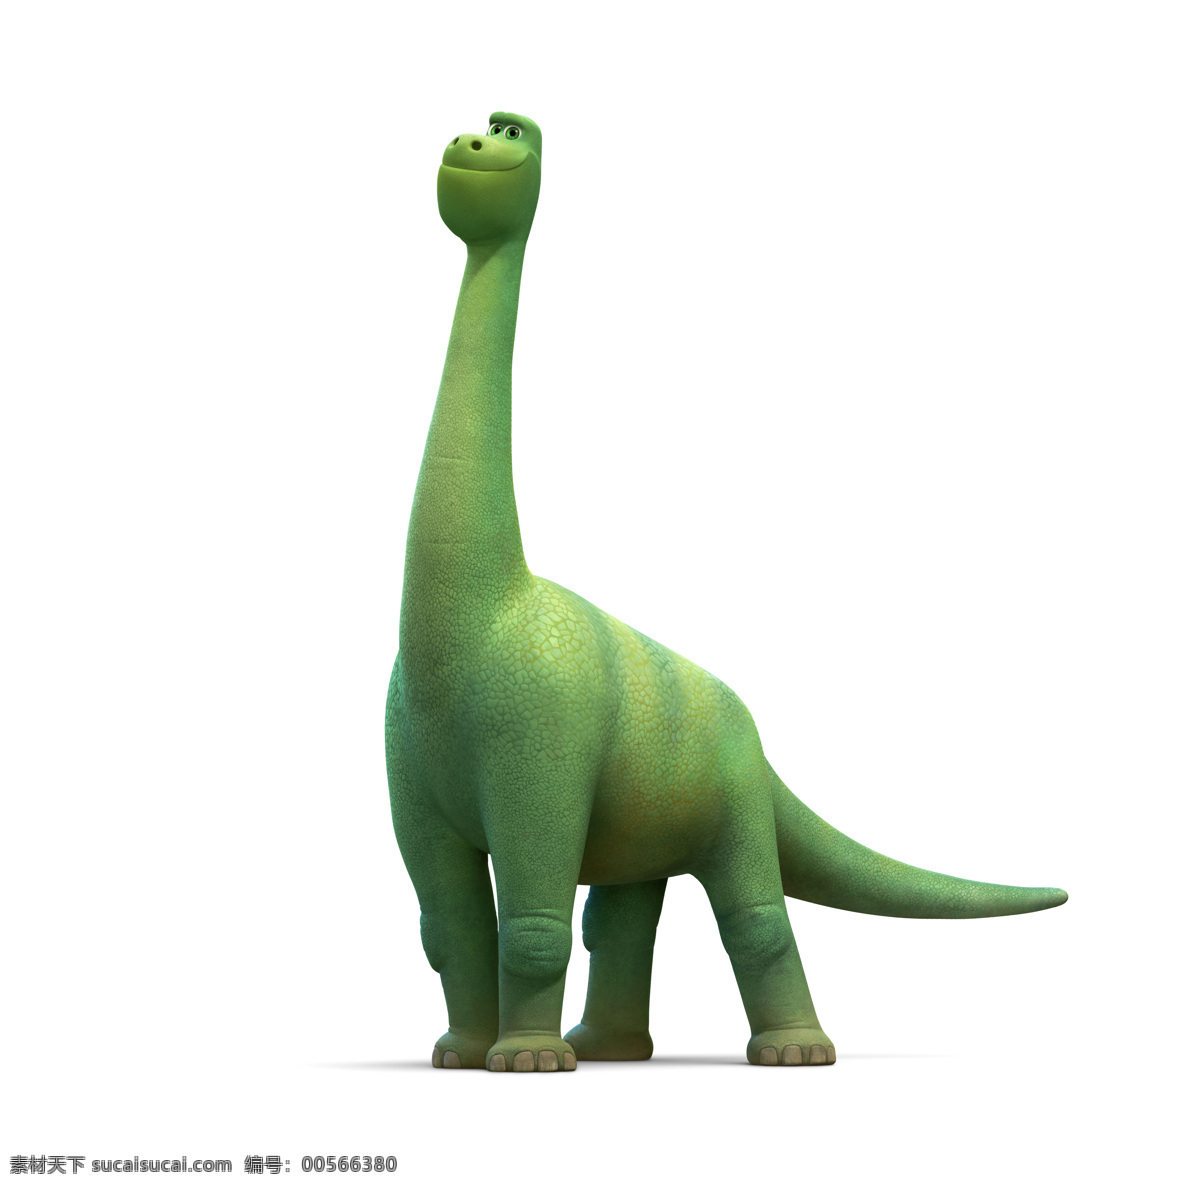 恐龙当家 恐龙与男孩 雷龙 善良的恐龙 恐龙世界 好恐龙 皮克斯 动画电影 pixar 动漫动画 动漫人物